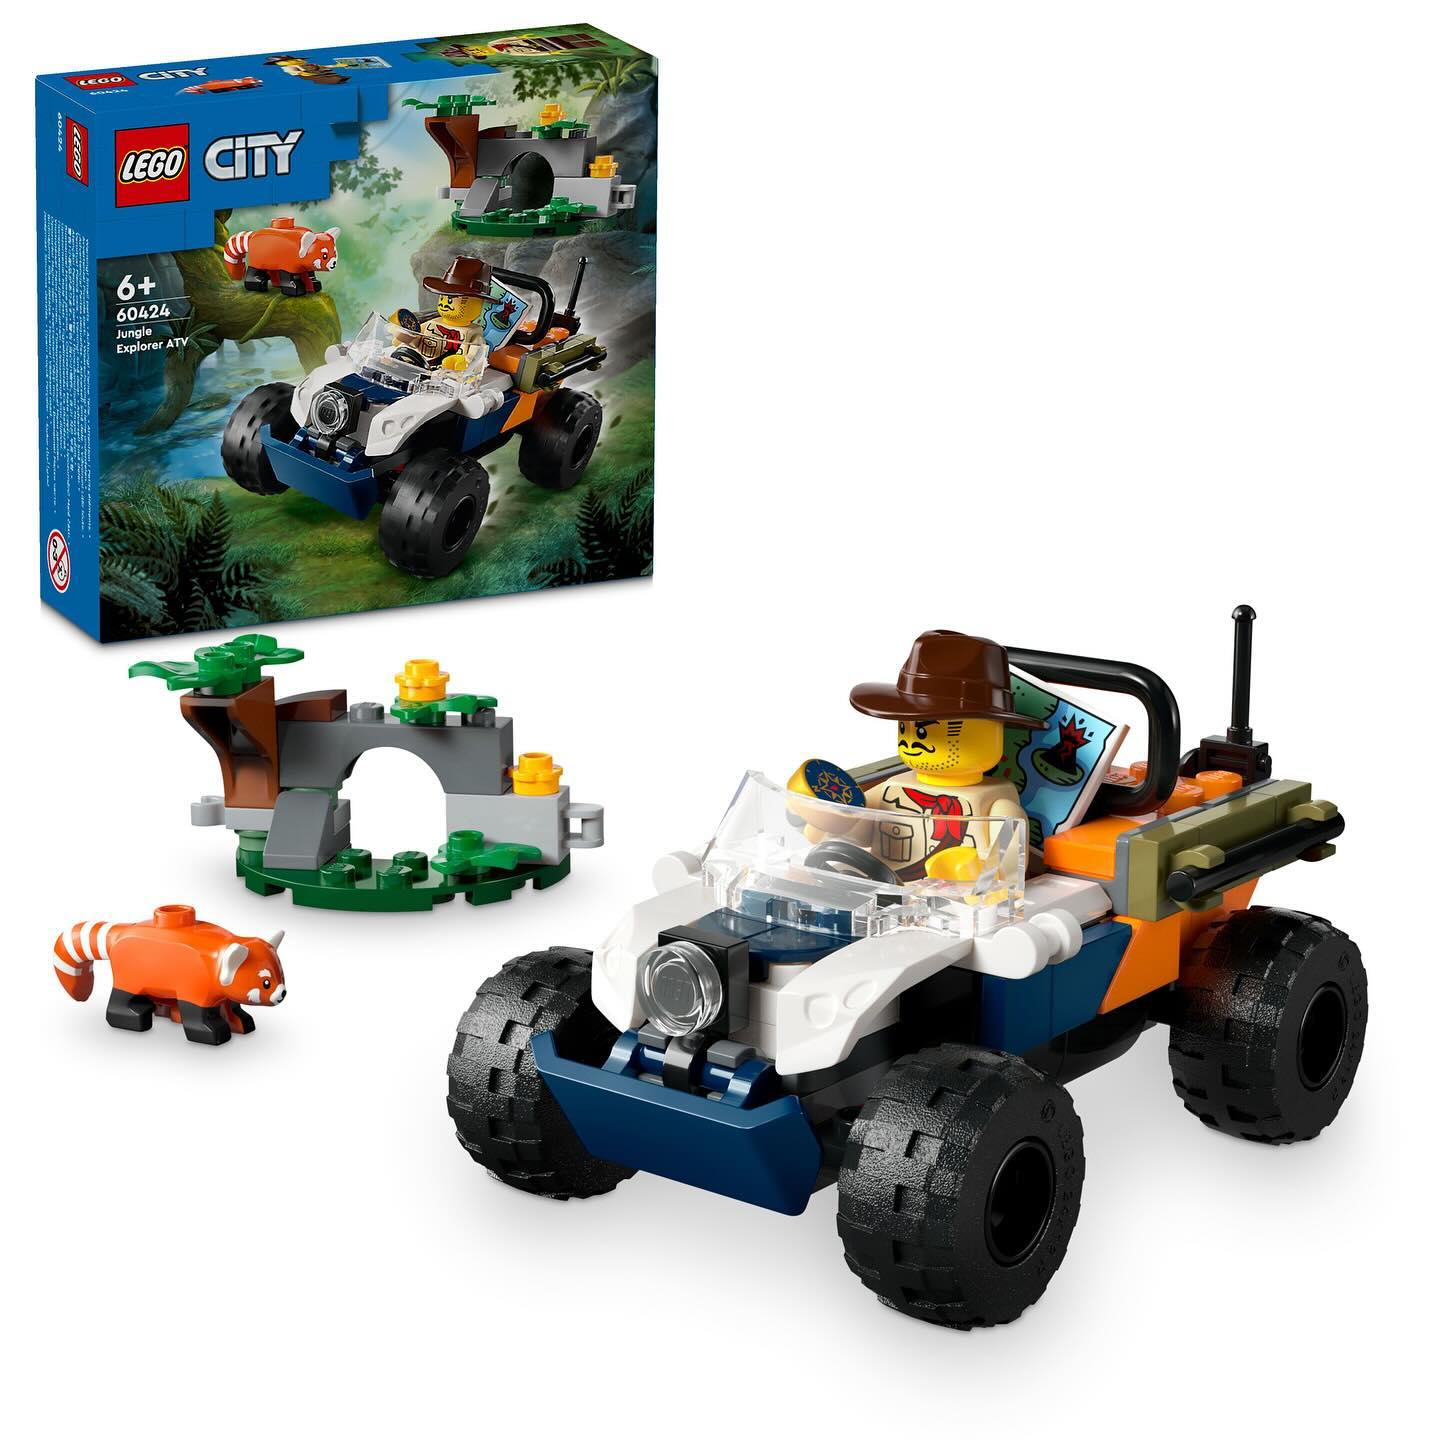 LEGO City Jungle Explorer ATV 60424